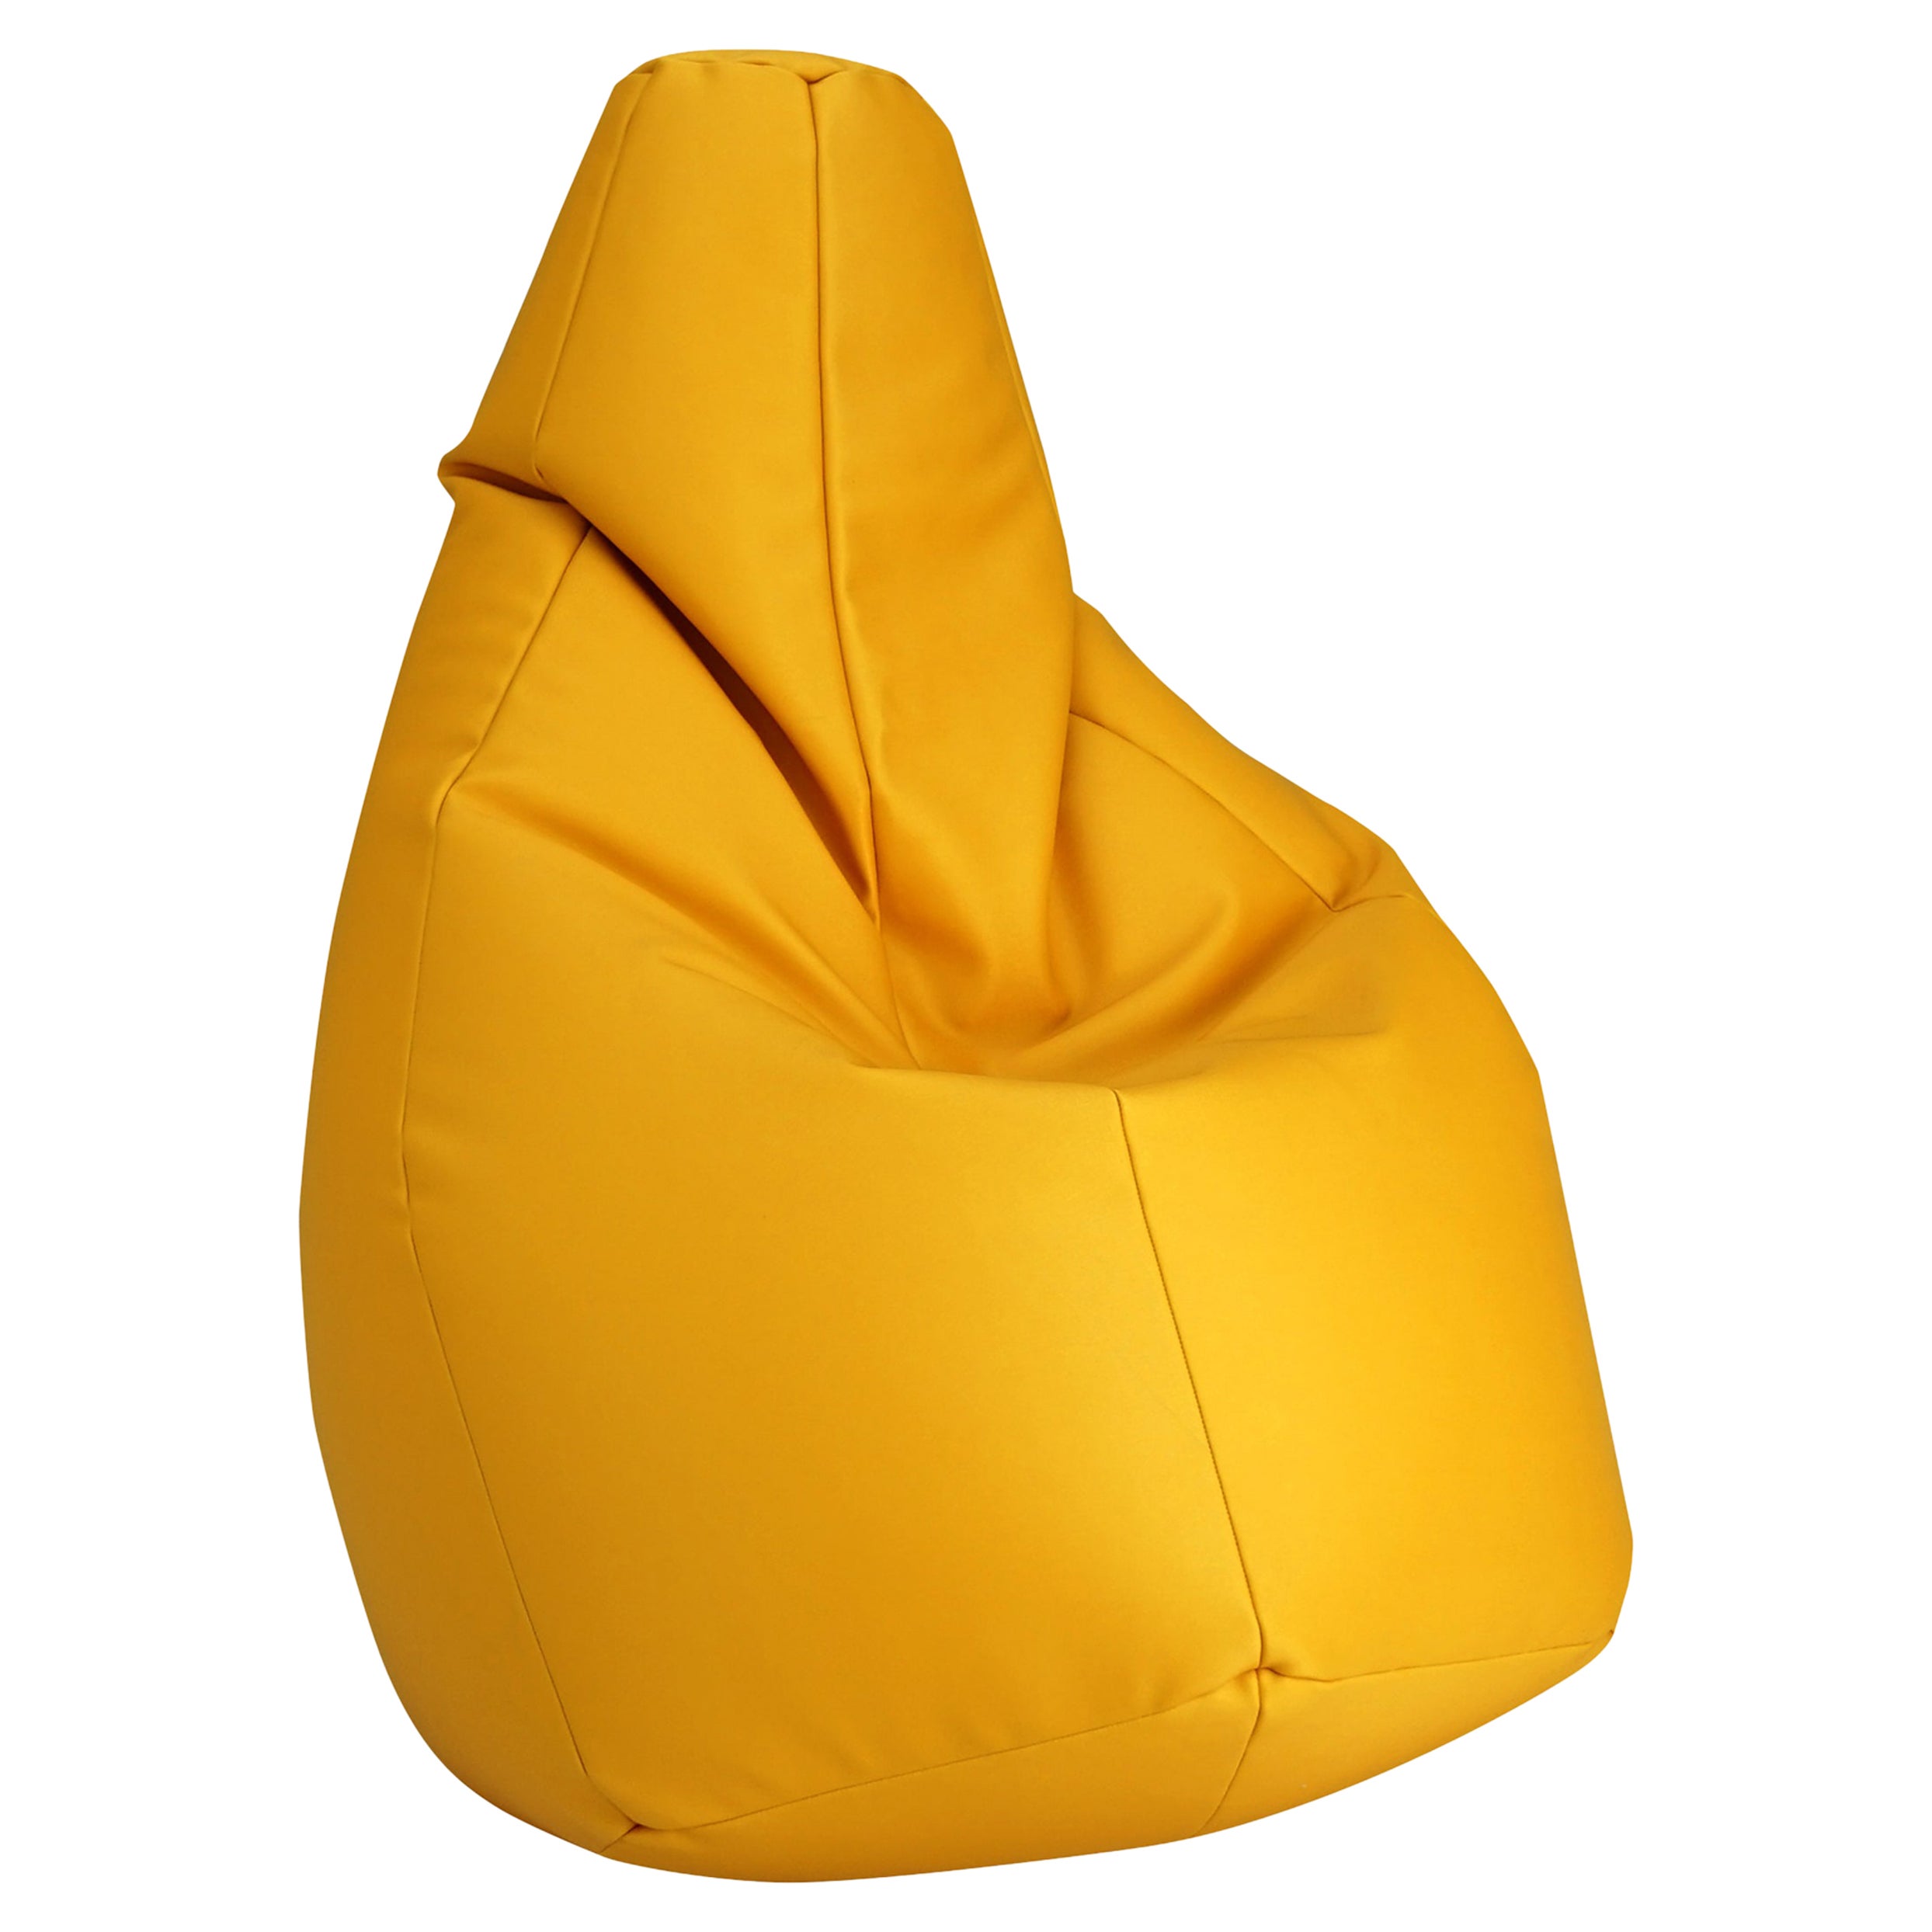 Zanotta Medium Sacco in Yellow Vip Fabric by Gatti, Paolini, Teodoro For Sale